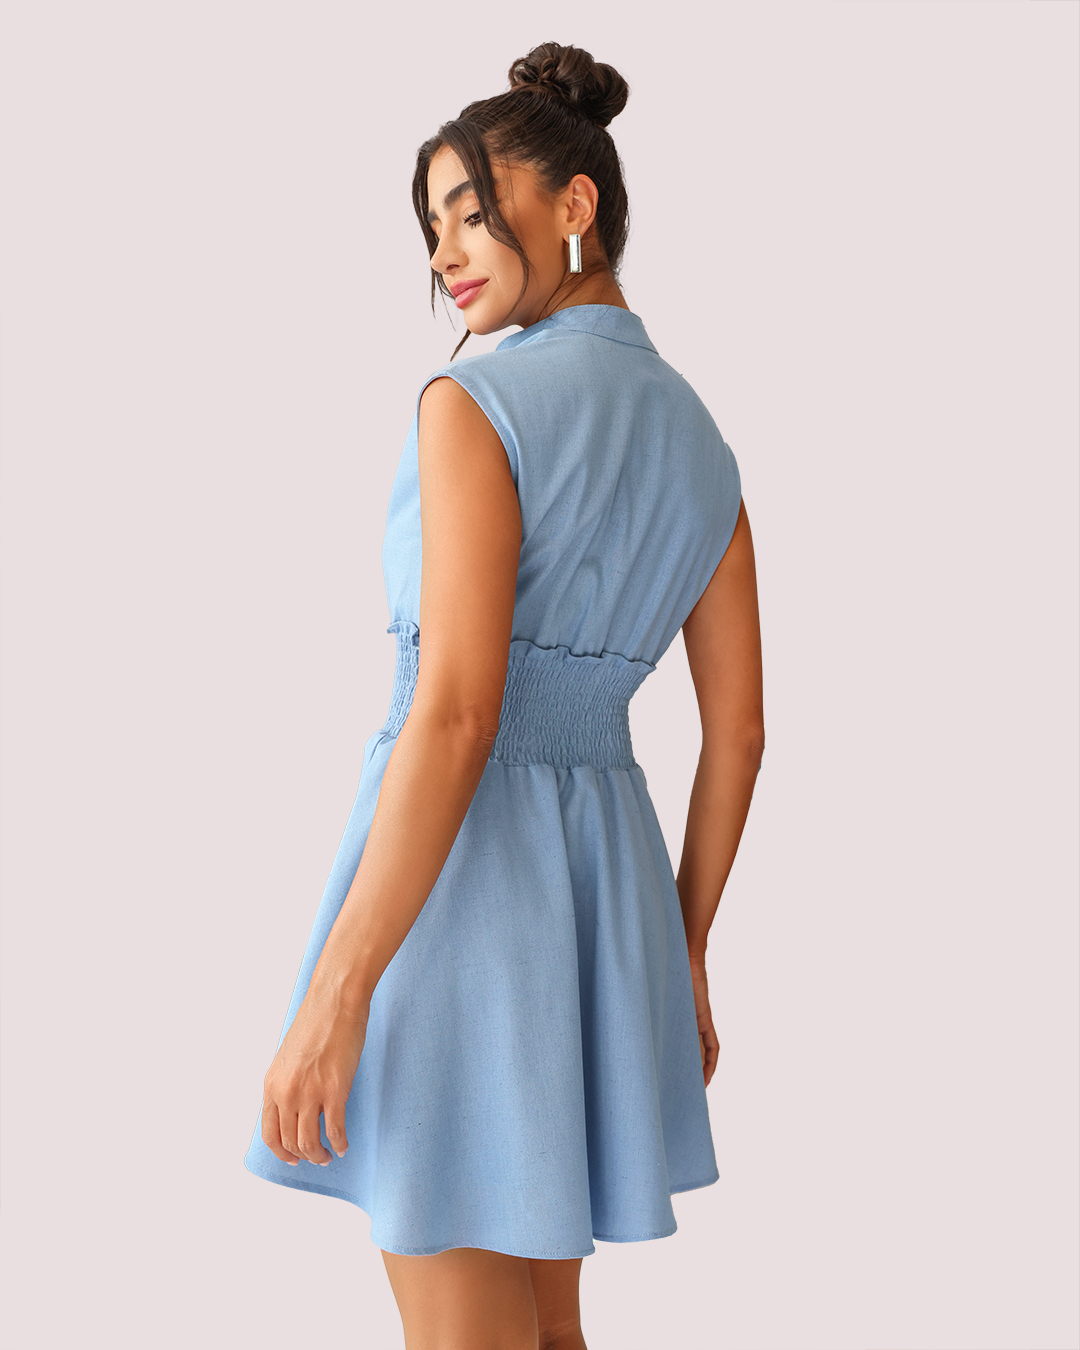 Dot Clothing - Dress Dot Clothing workout wheeldo in Light Blue Linen - 1880AZCL